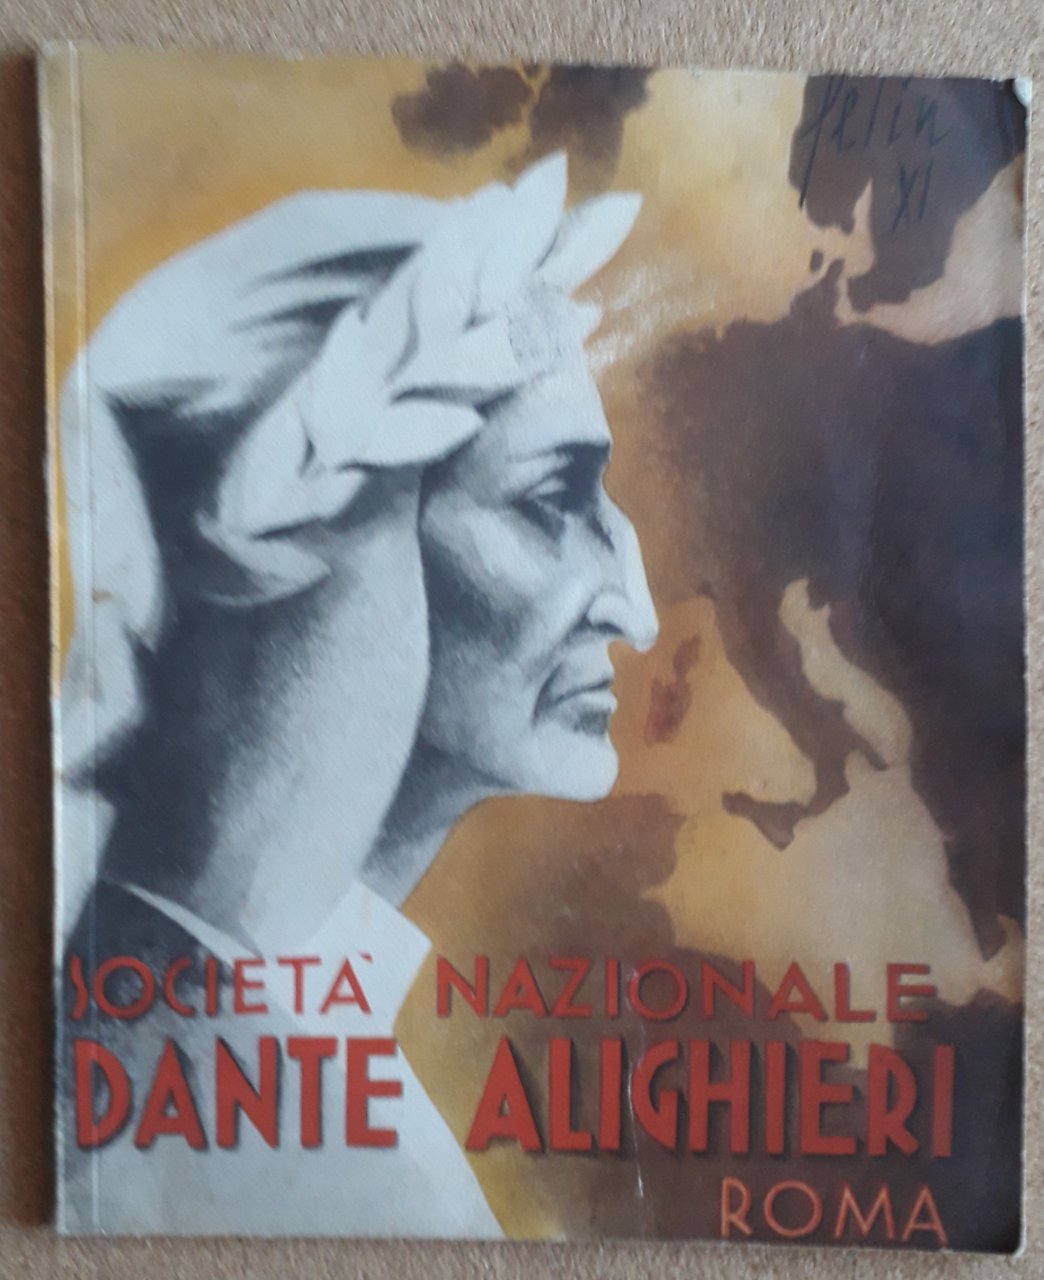 Società Nazionale Dante Alighieri Roma